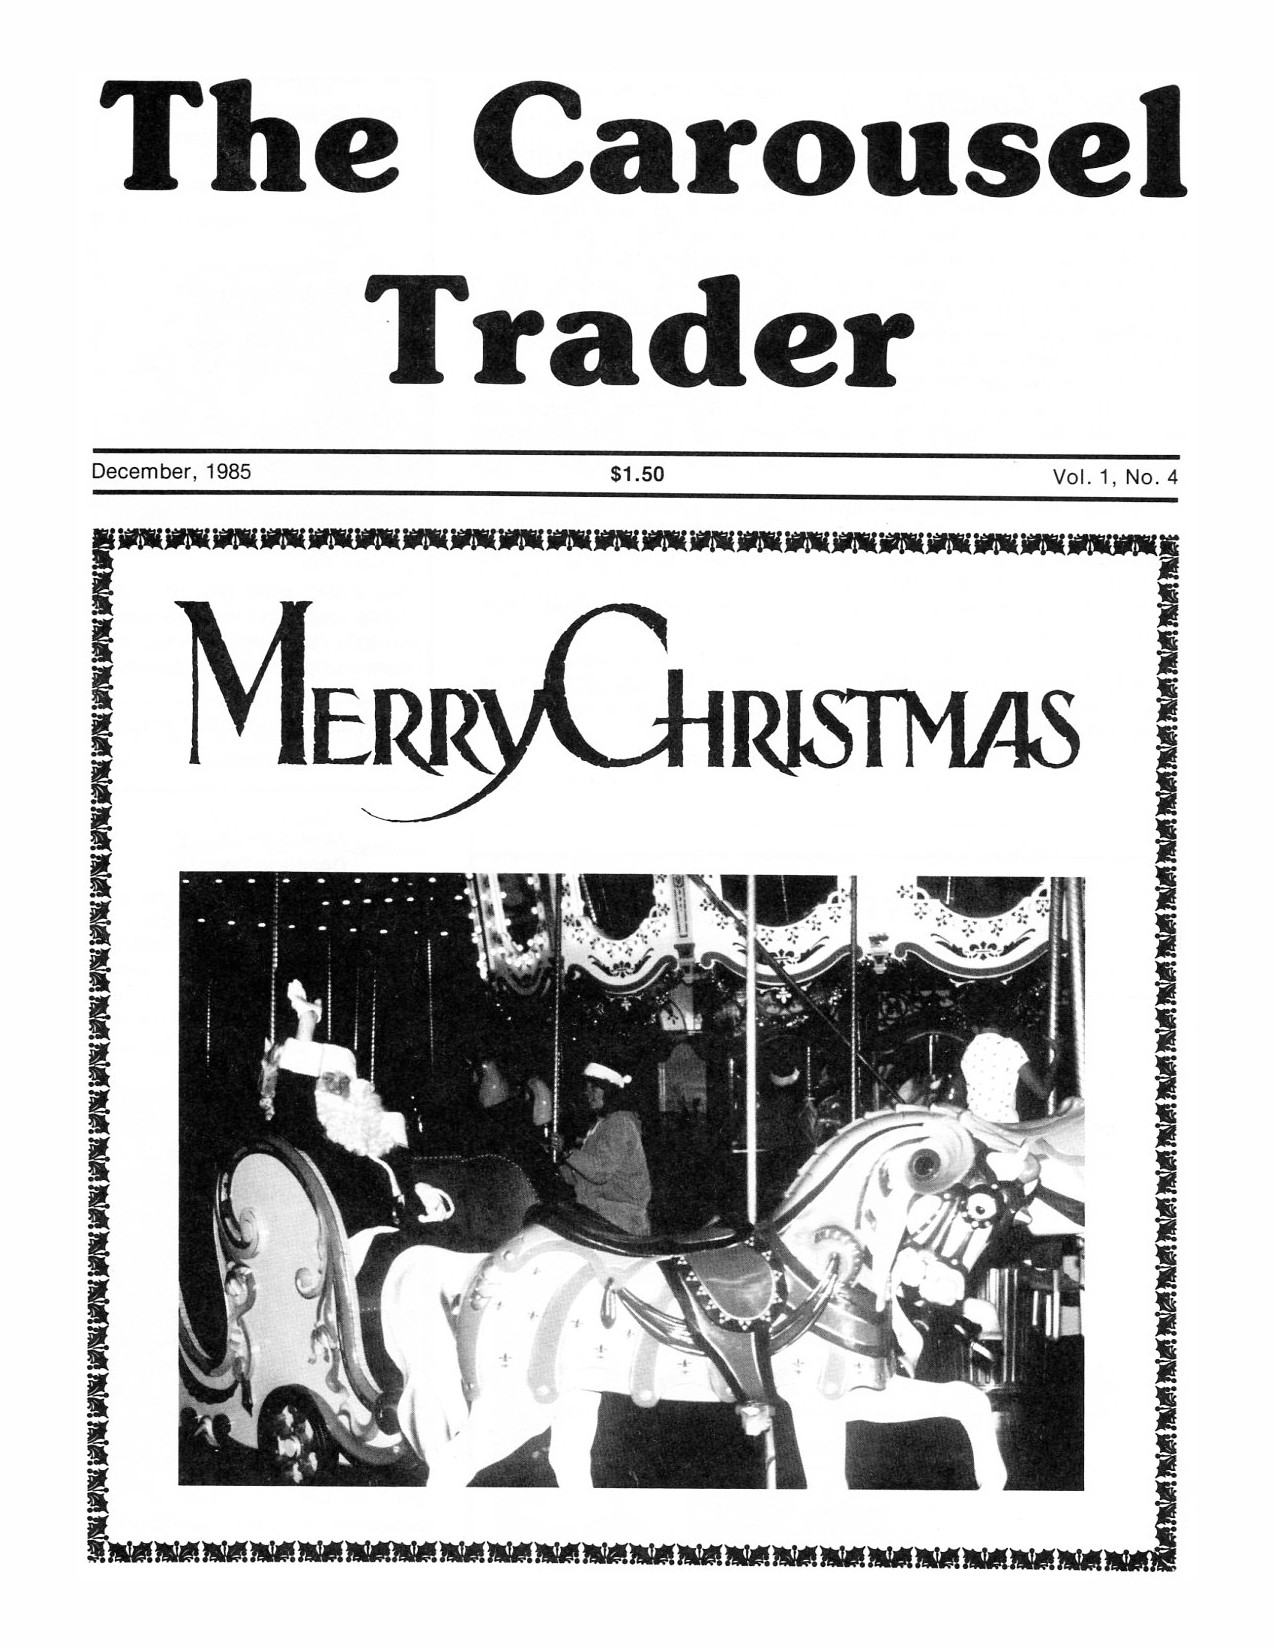 Carousel-news-cover-v1n4-Santa-Monica-Pier-carousel-December-1985